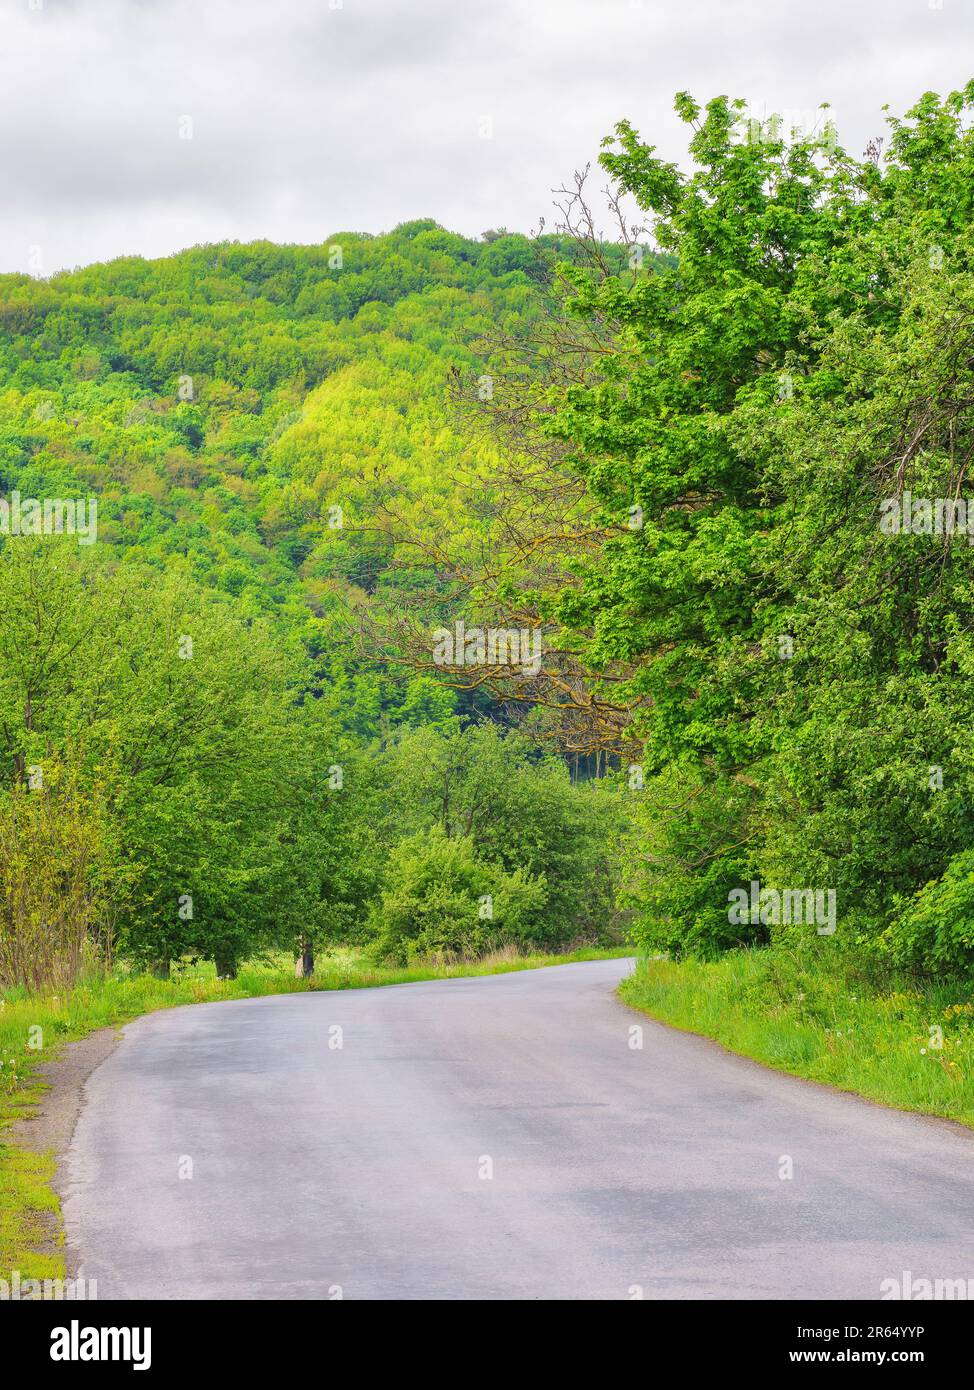 la route sinueuse mène à travers le magnifique col de montagne, révélant un magnifique panorama de la campagne Banque D'Images